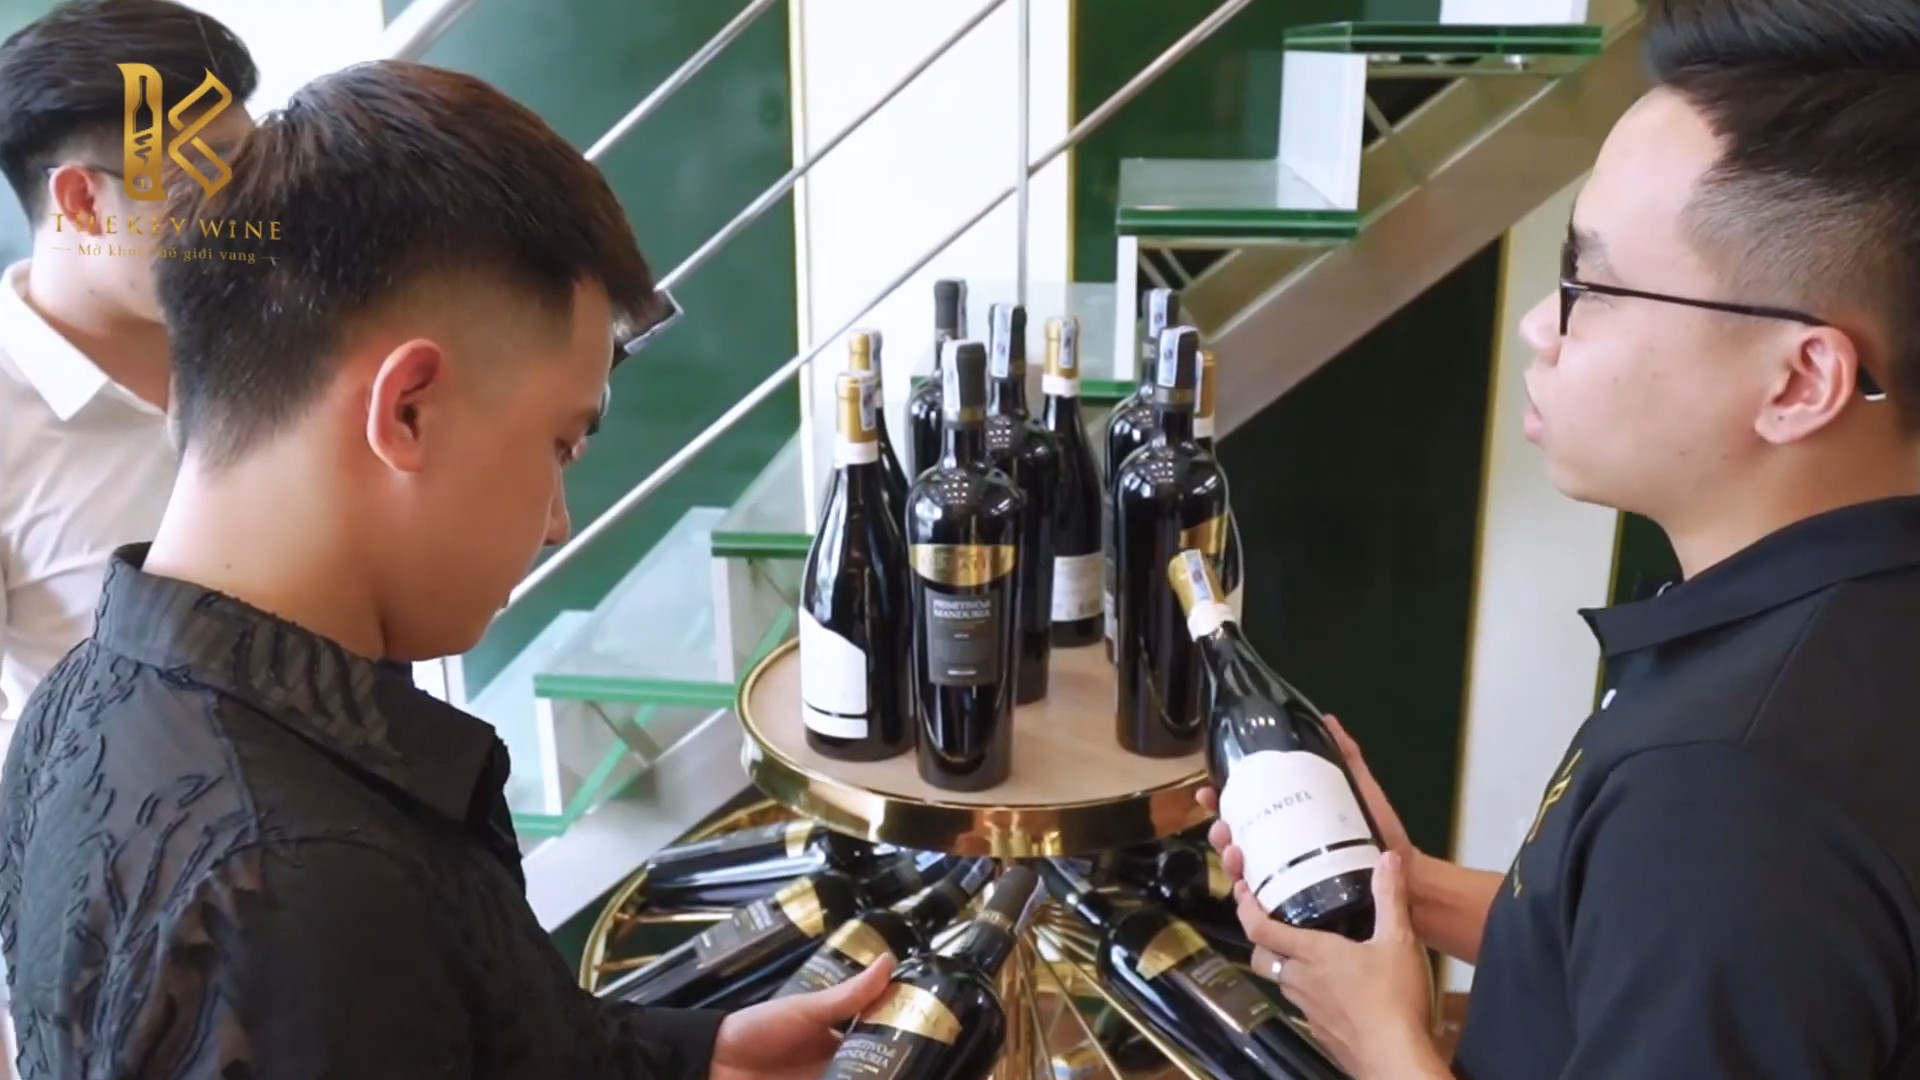 TheKey Wine: Tâm huyết của CEO Thân Huyền Trang - "Nhập khẩu sự tinh tế - Khơi nguồn niềm đam mê" 5